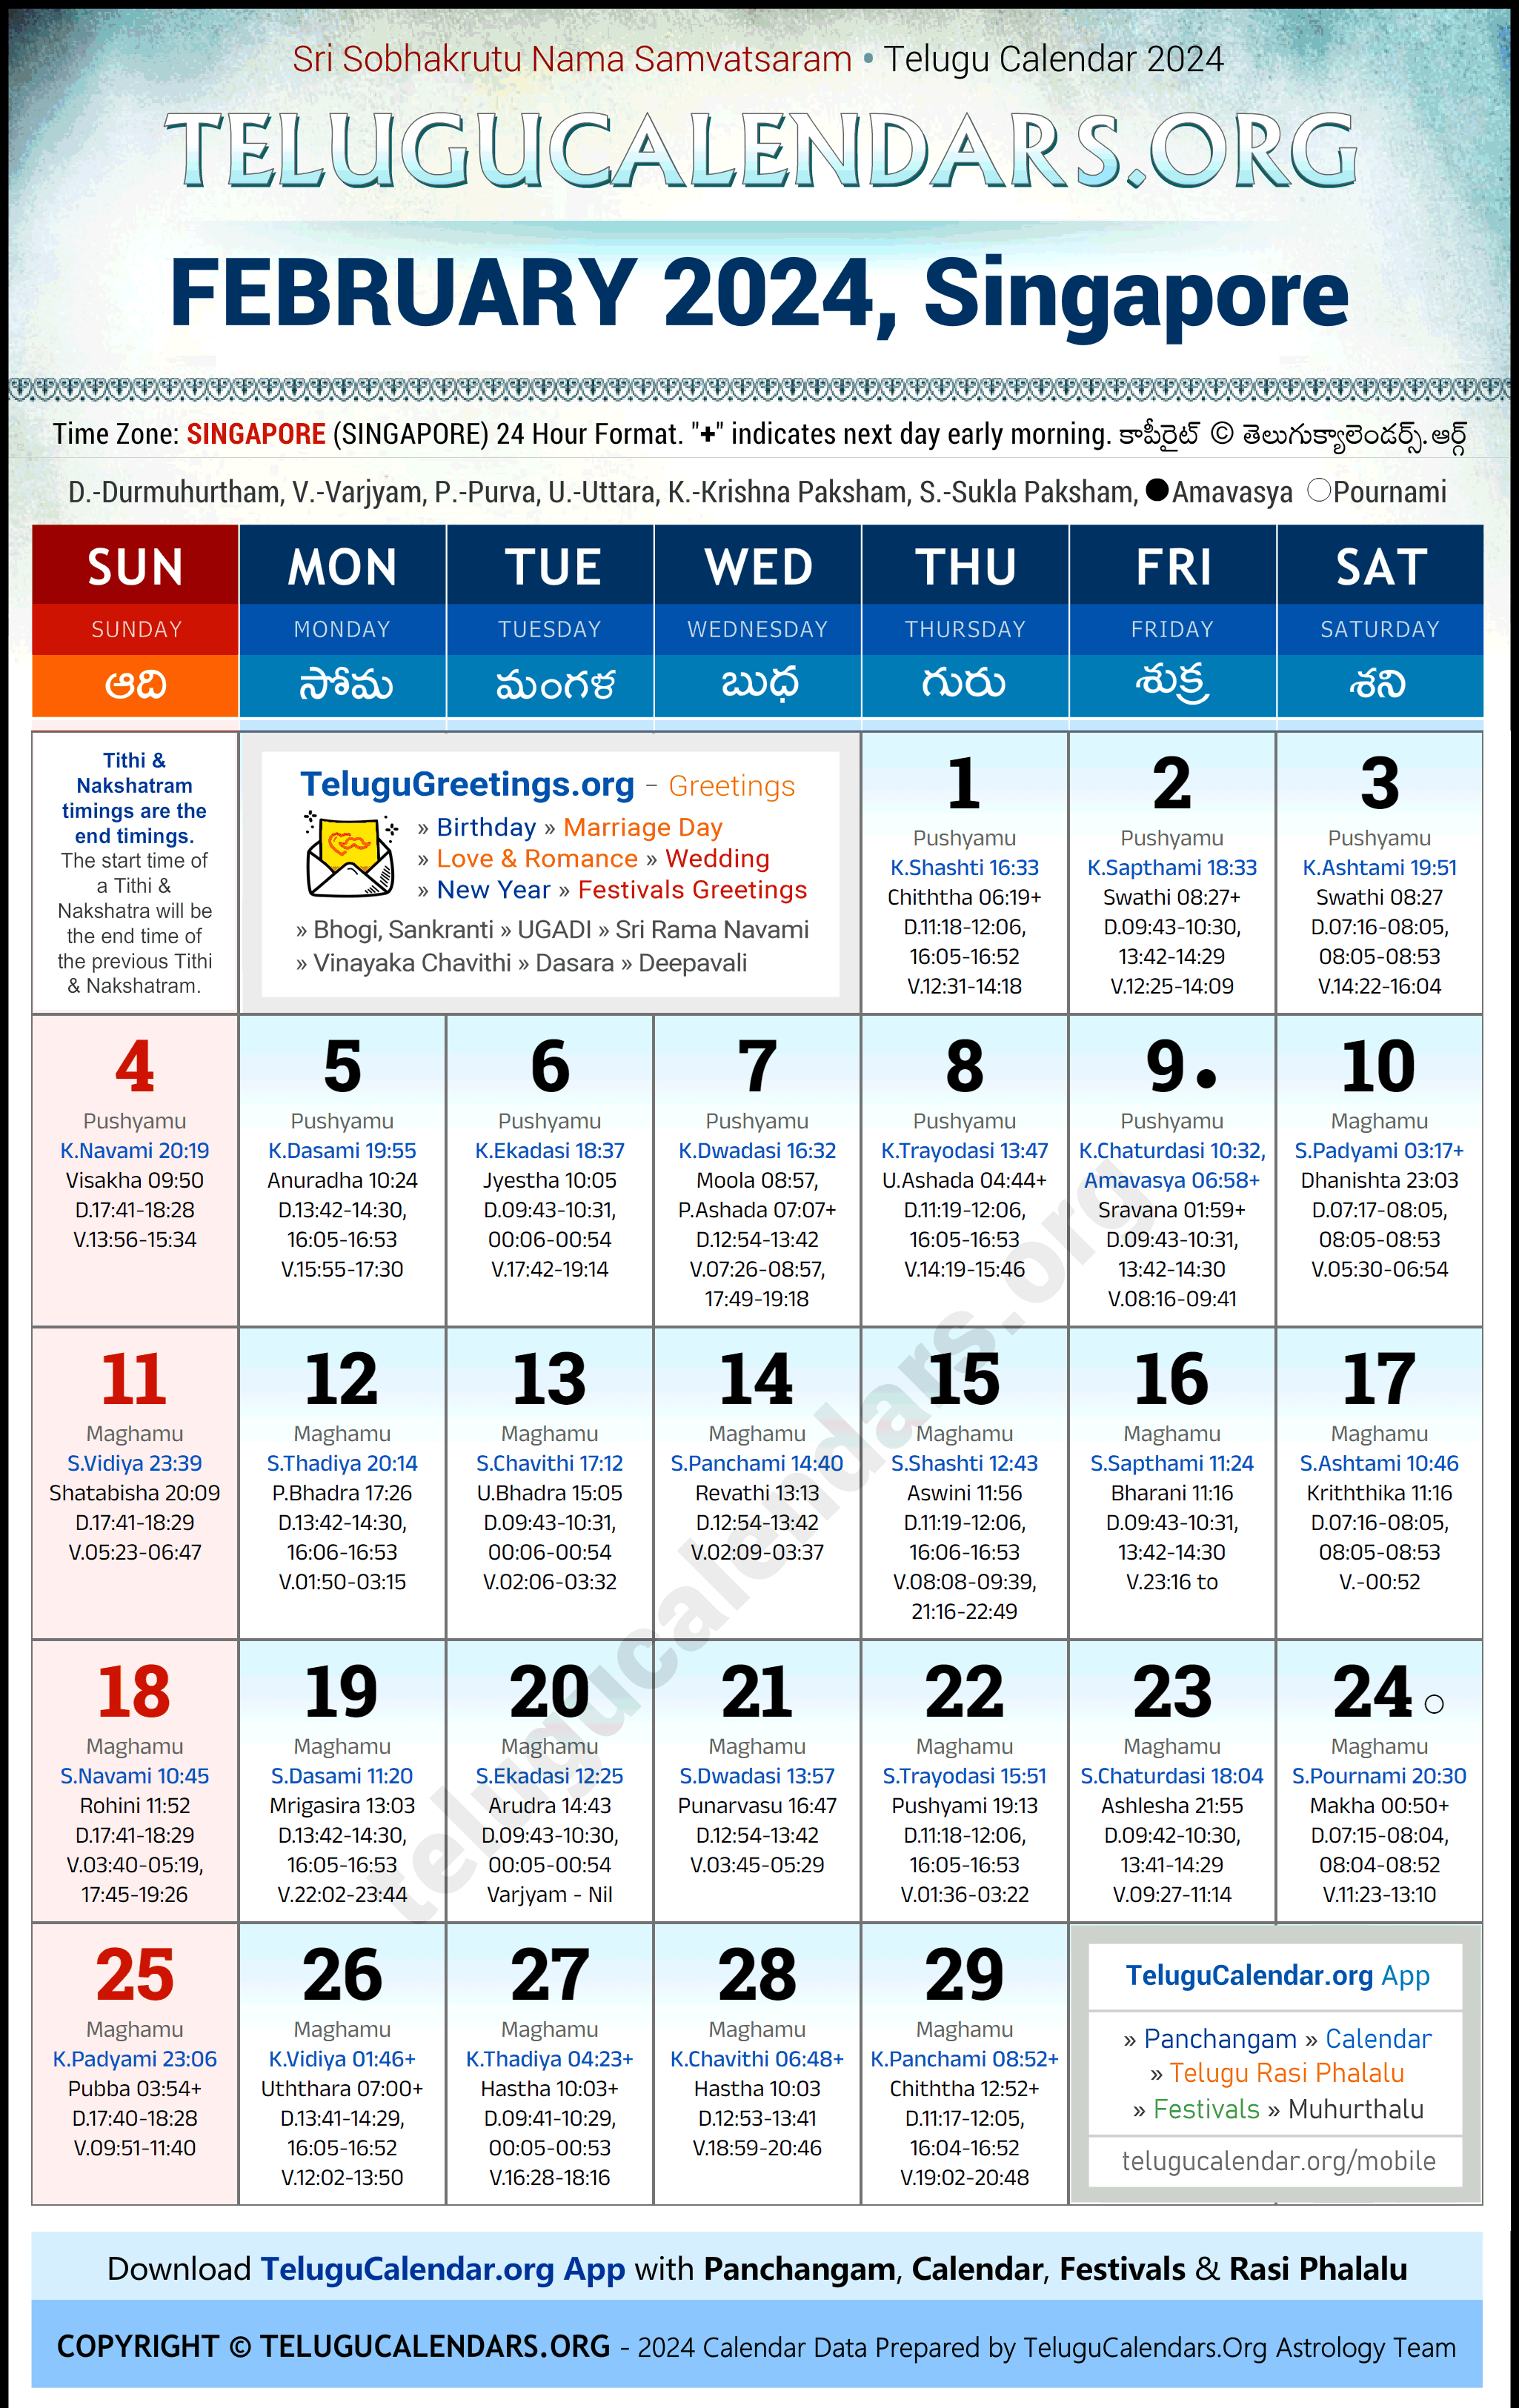 Telugu Calendar 2024 February Festivals for Singapore